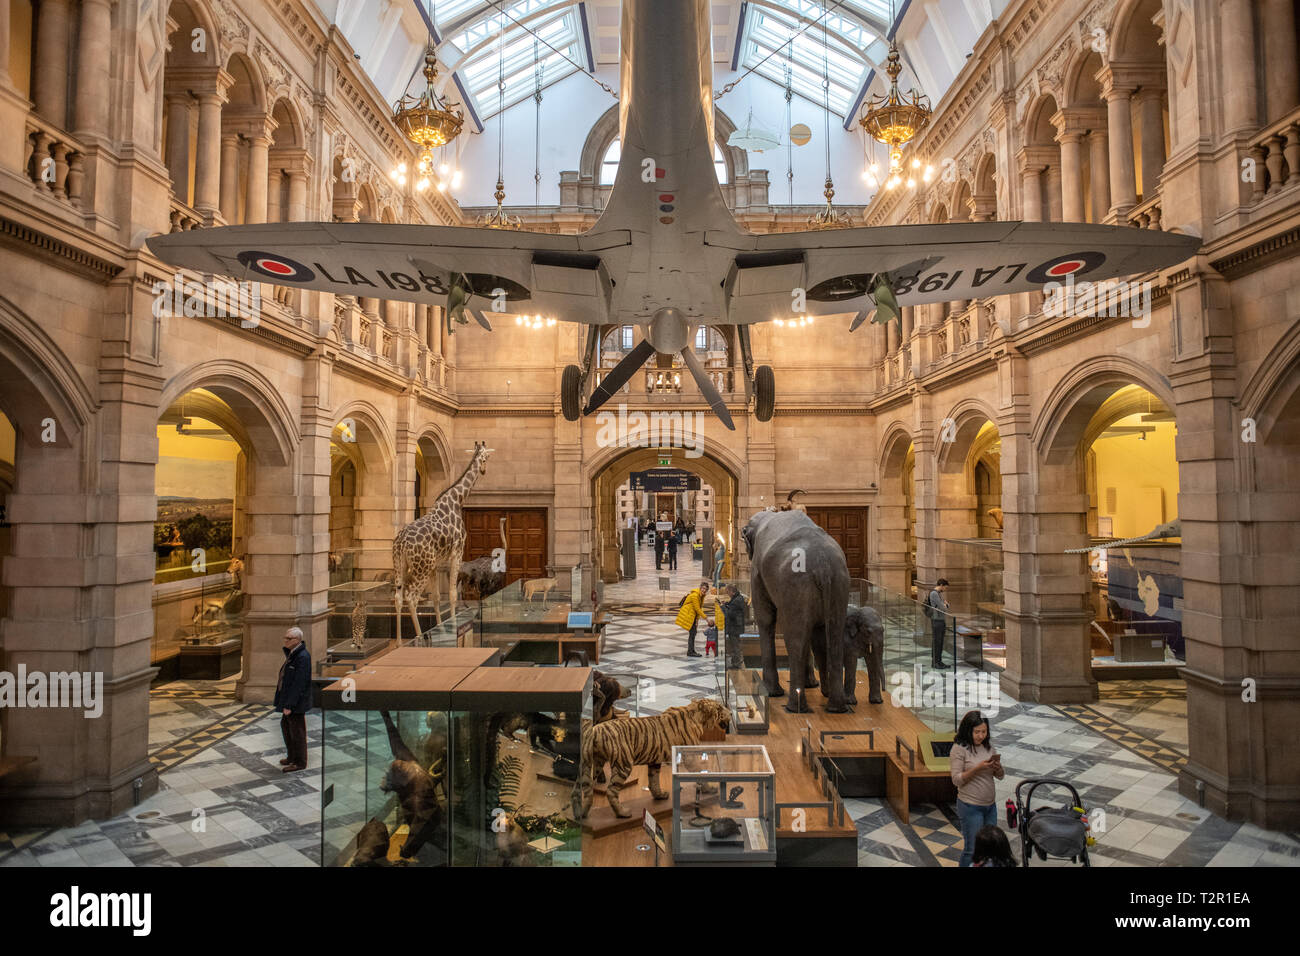 Un avion suspendu dans le hall de la musée de Kelvingrove d'animaux bourrés à Glasgow, Ecosse Banque D'Images